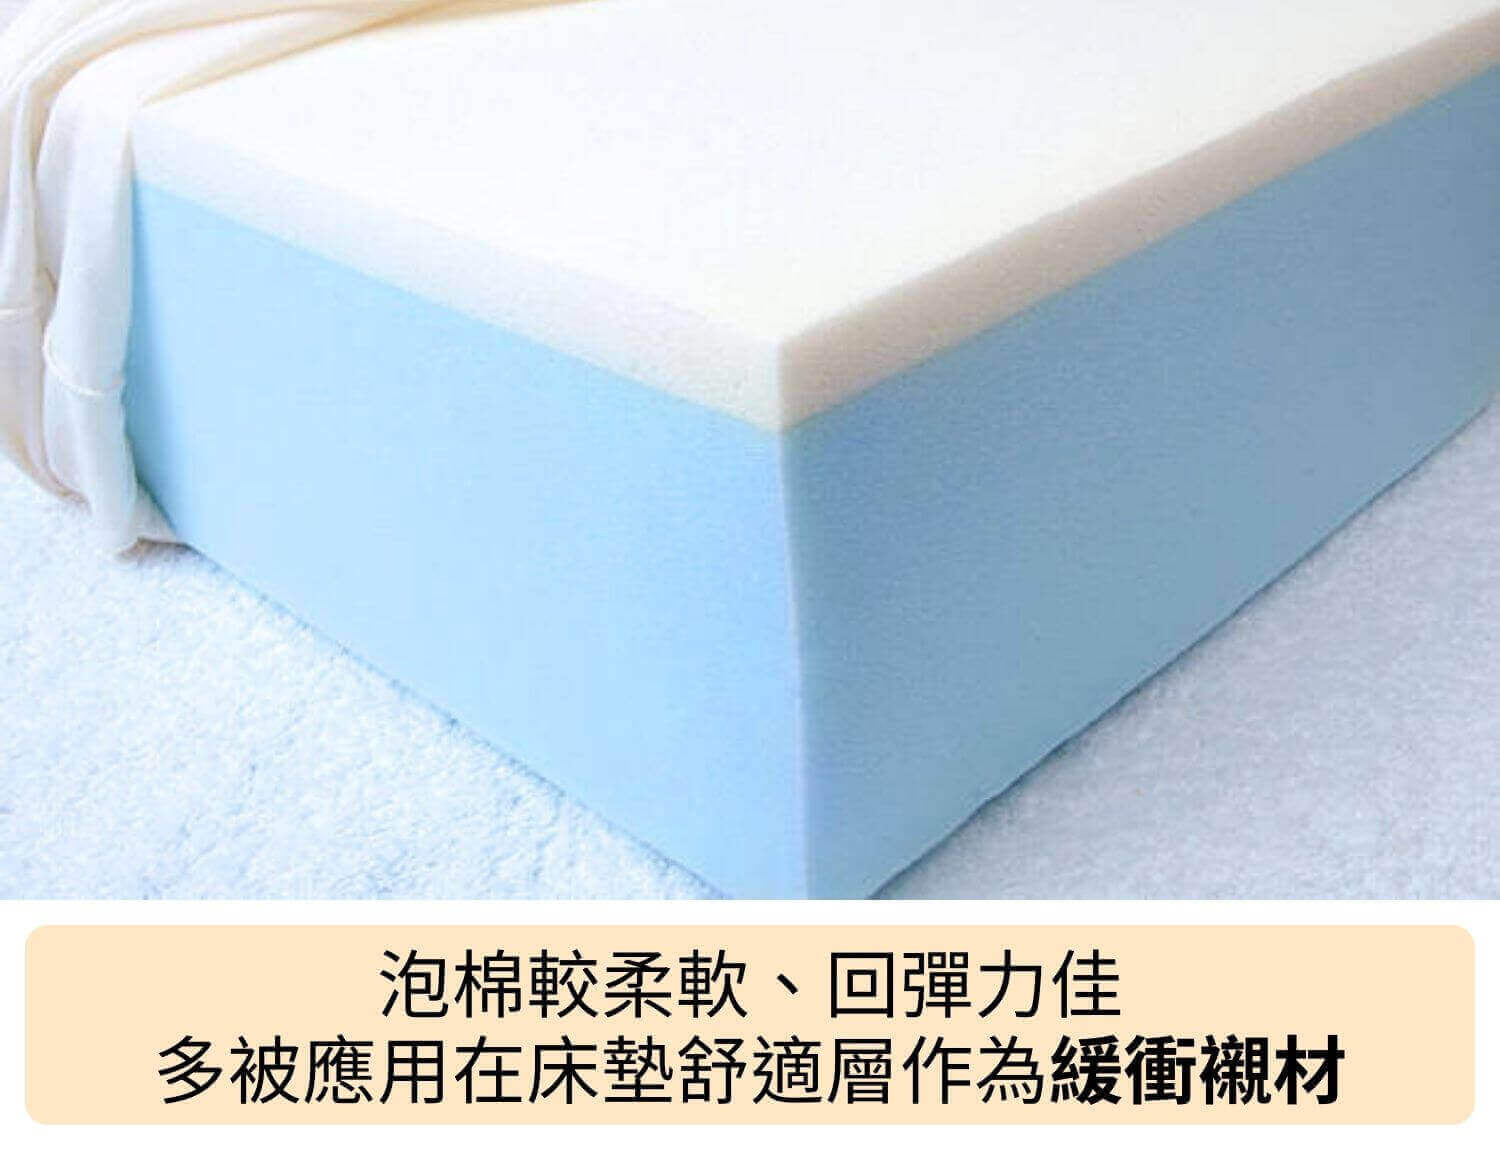 泡棉較柔軟、回彈力佳，多被應用在床墊舒適層作為緩衝襯材